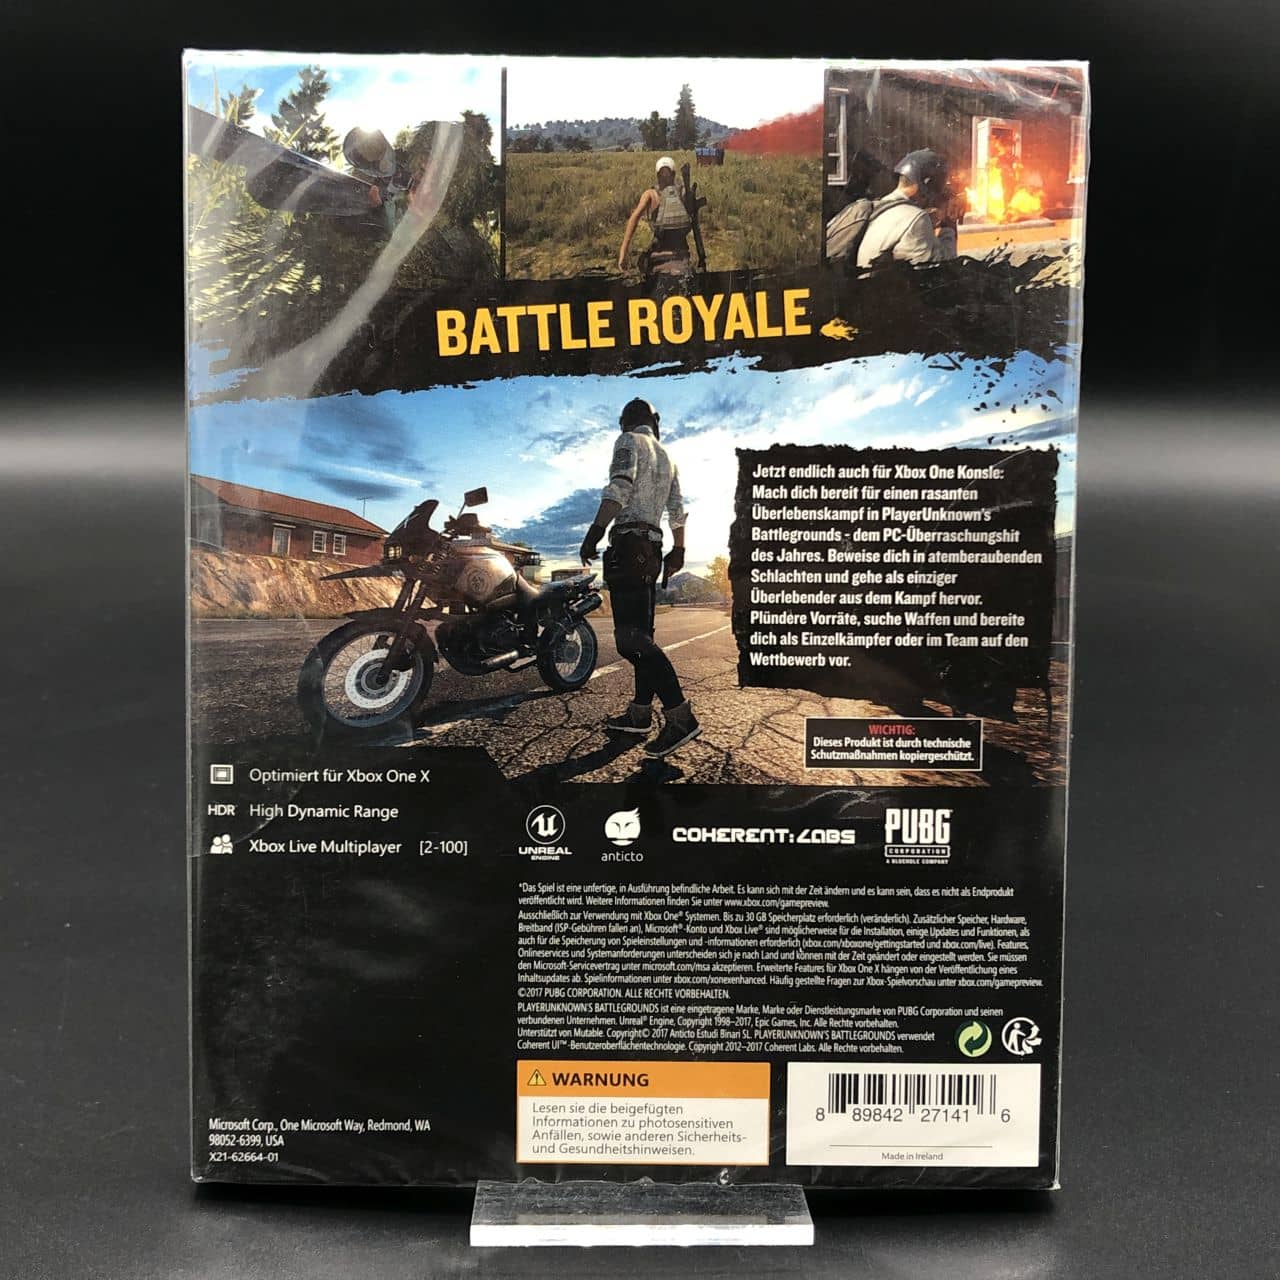 PlayerUnknown's Battlegrounds (NEU) (Download Karte - kein Datenträger) Xbox One (FSK18)